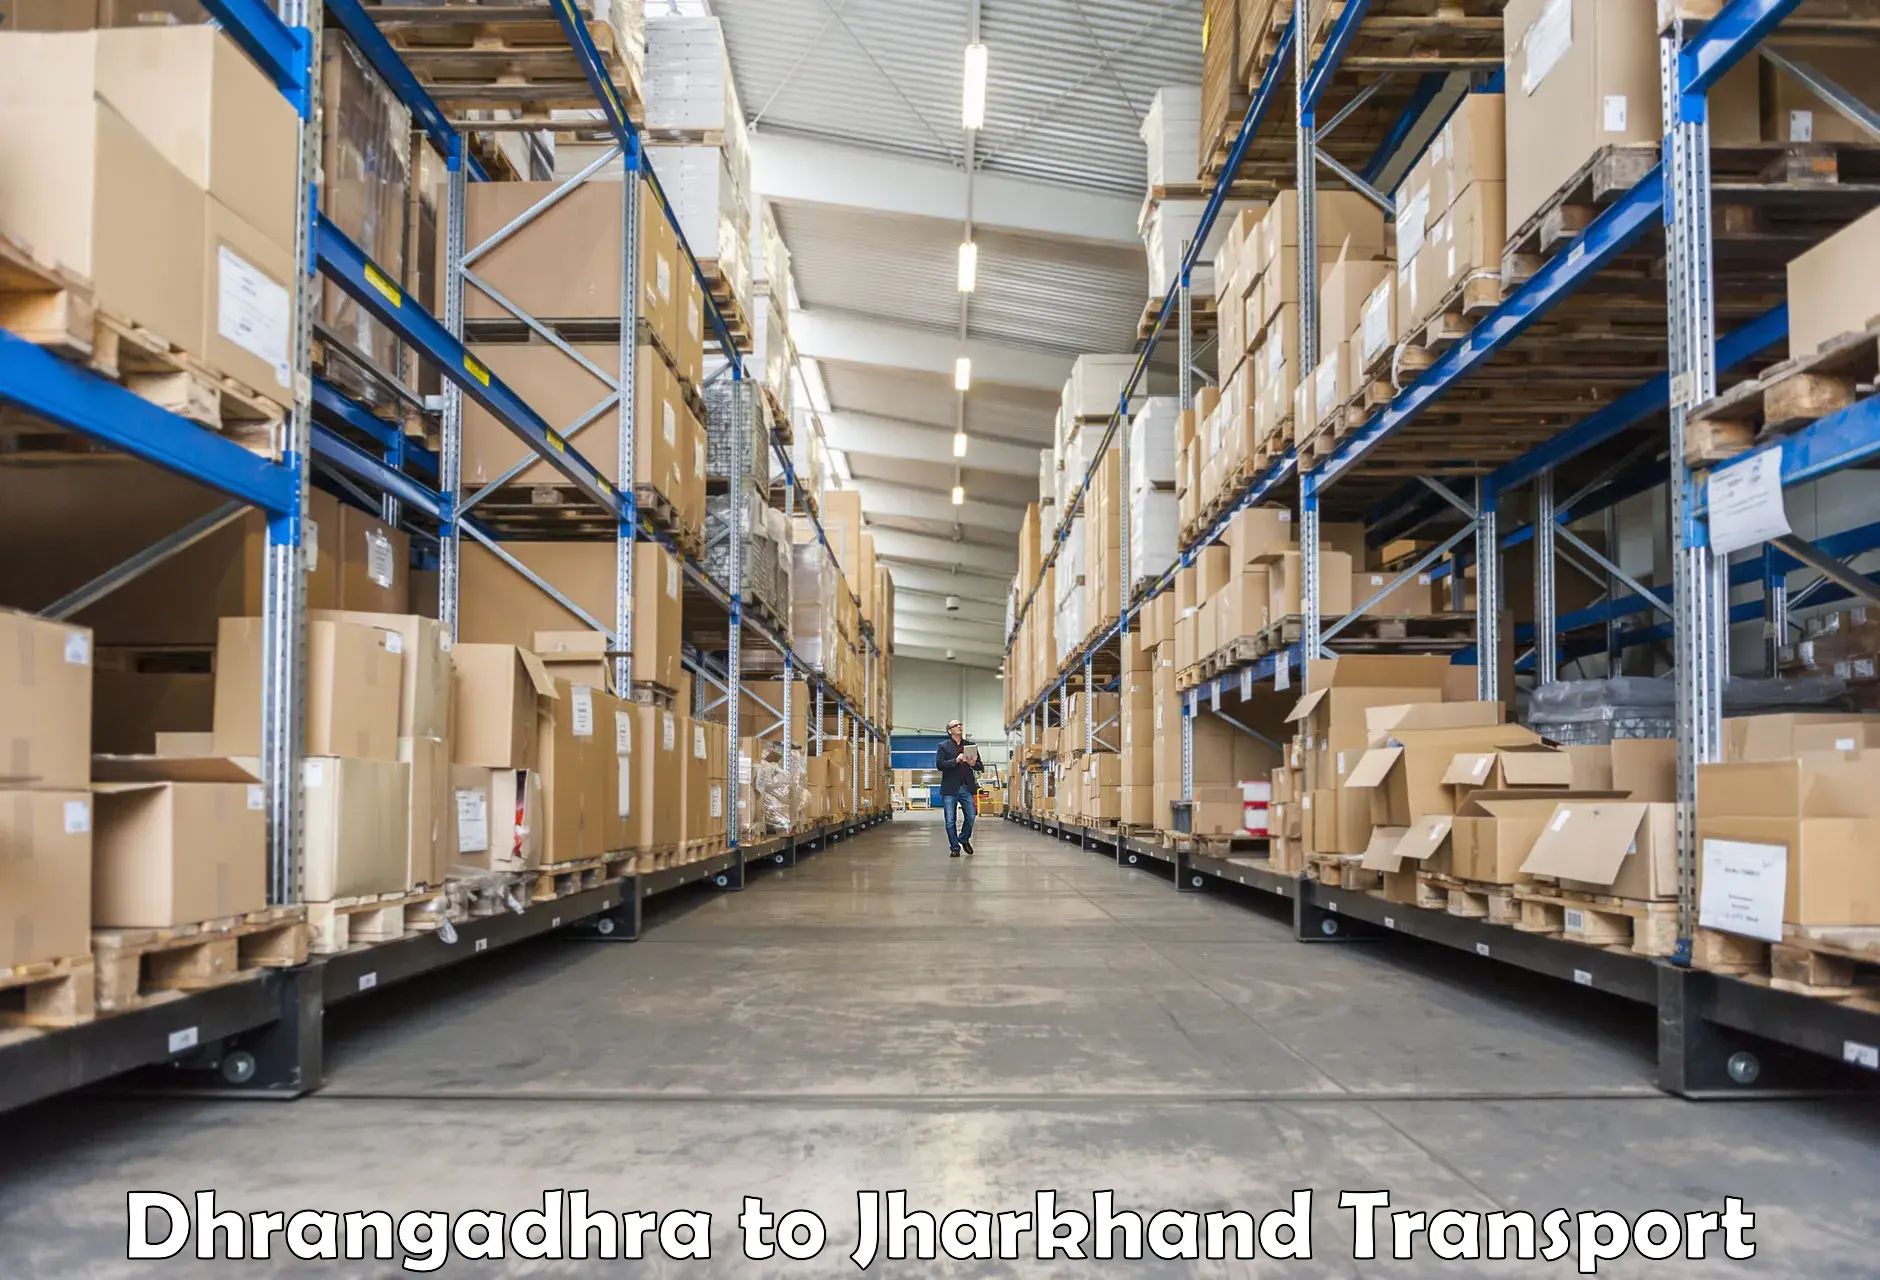 Furniture transport service in Dhrangadhra to Hariharganj